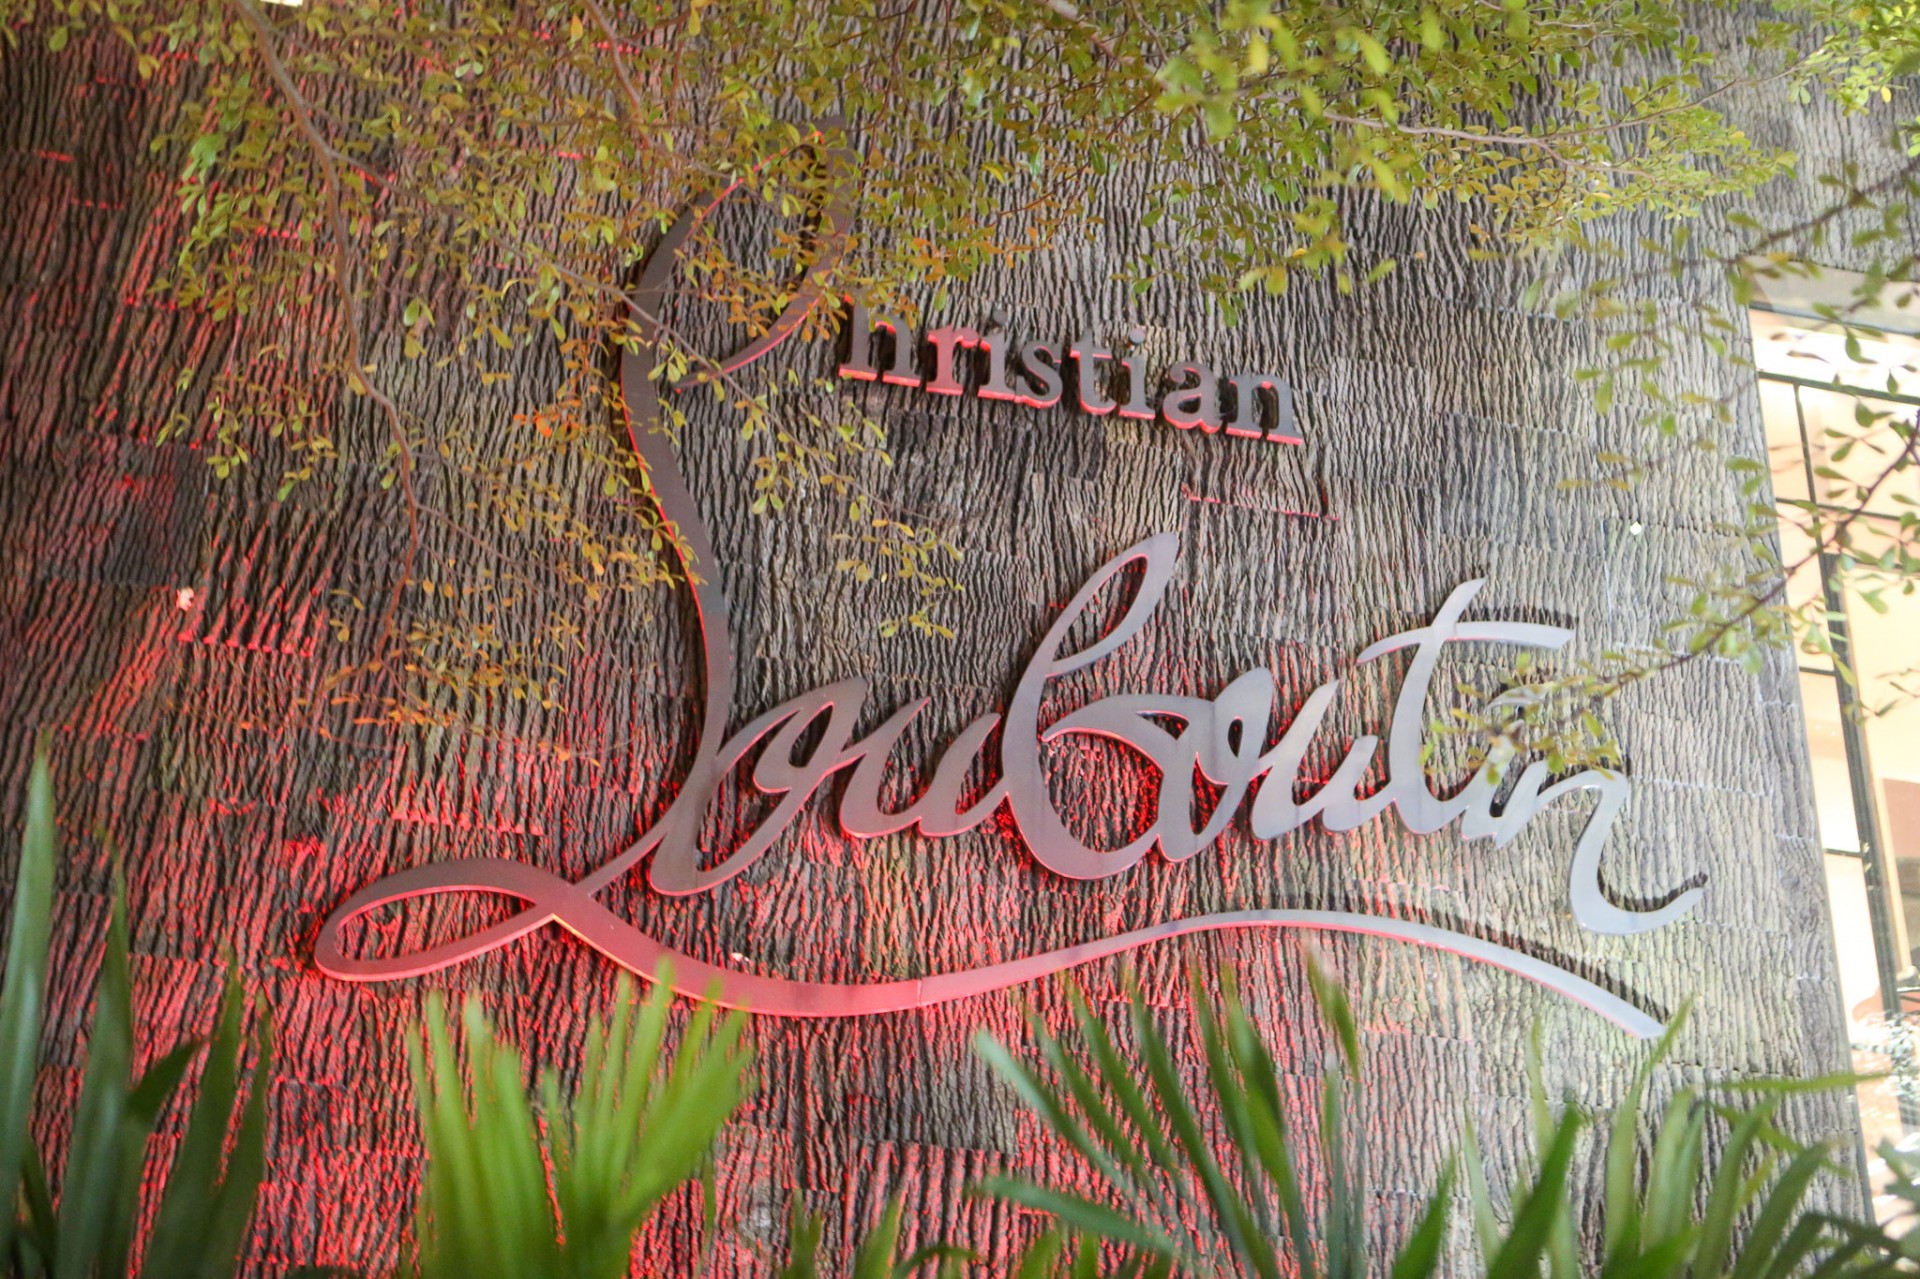 Christian Louboutin store, Miami